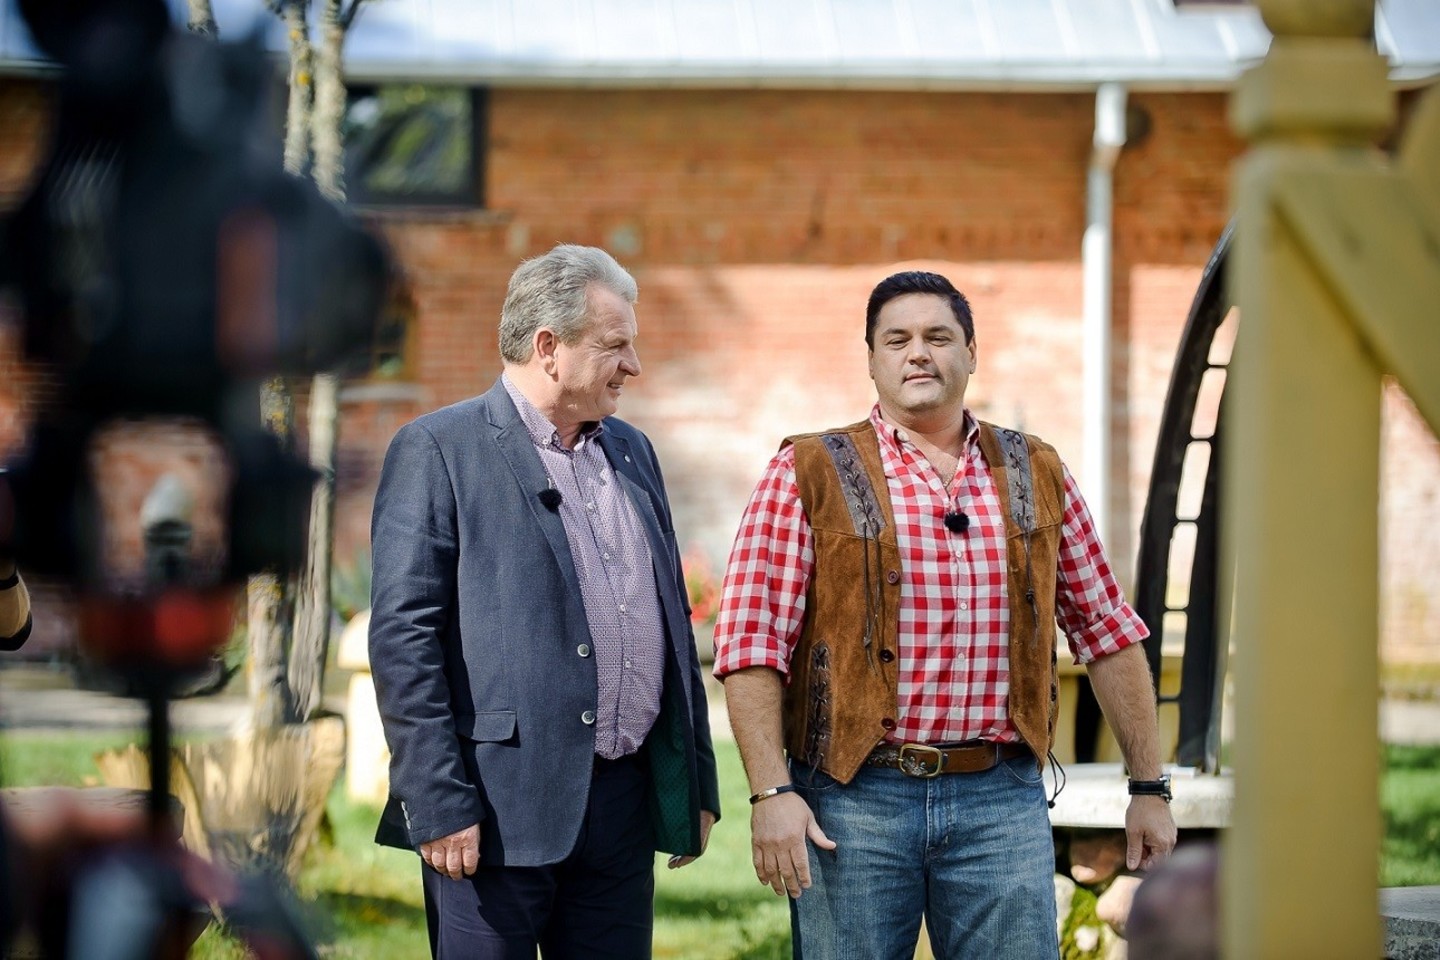 Televizijos laidų vedėjui Vitalijui Cololo naujame realybės šou kompaniją palaikys Lukšių žemės ūkio bendrovės vadovas Jonas Pranaitis.